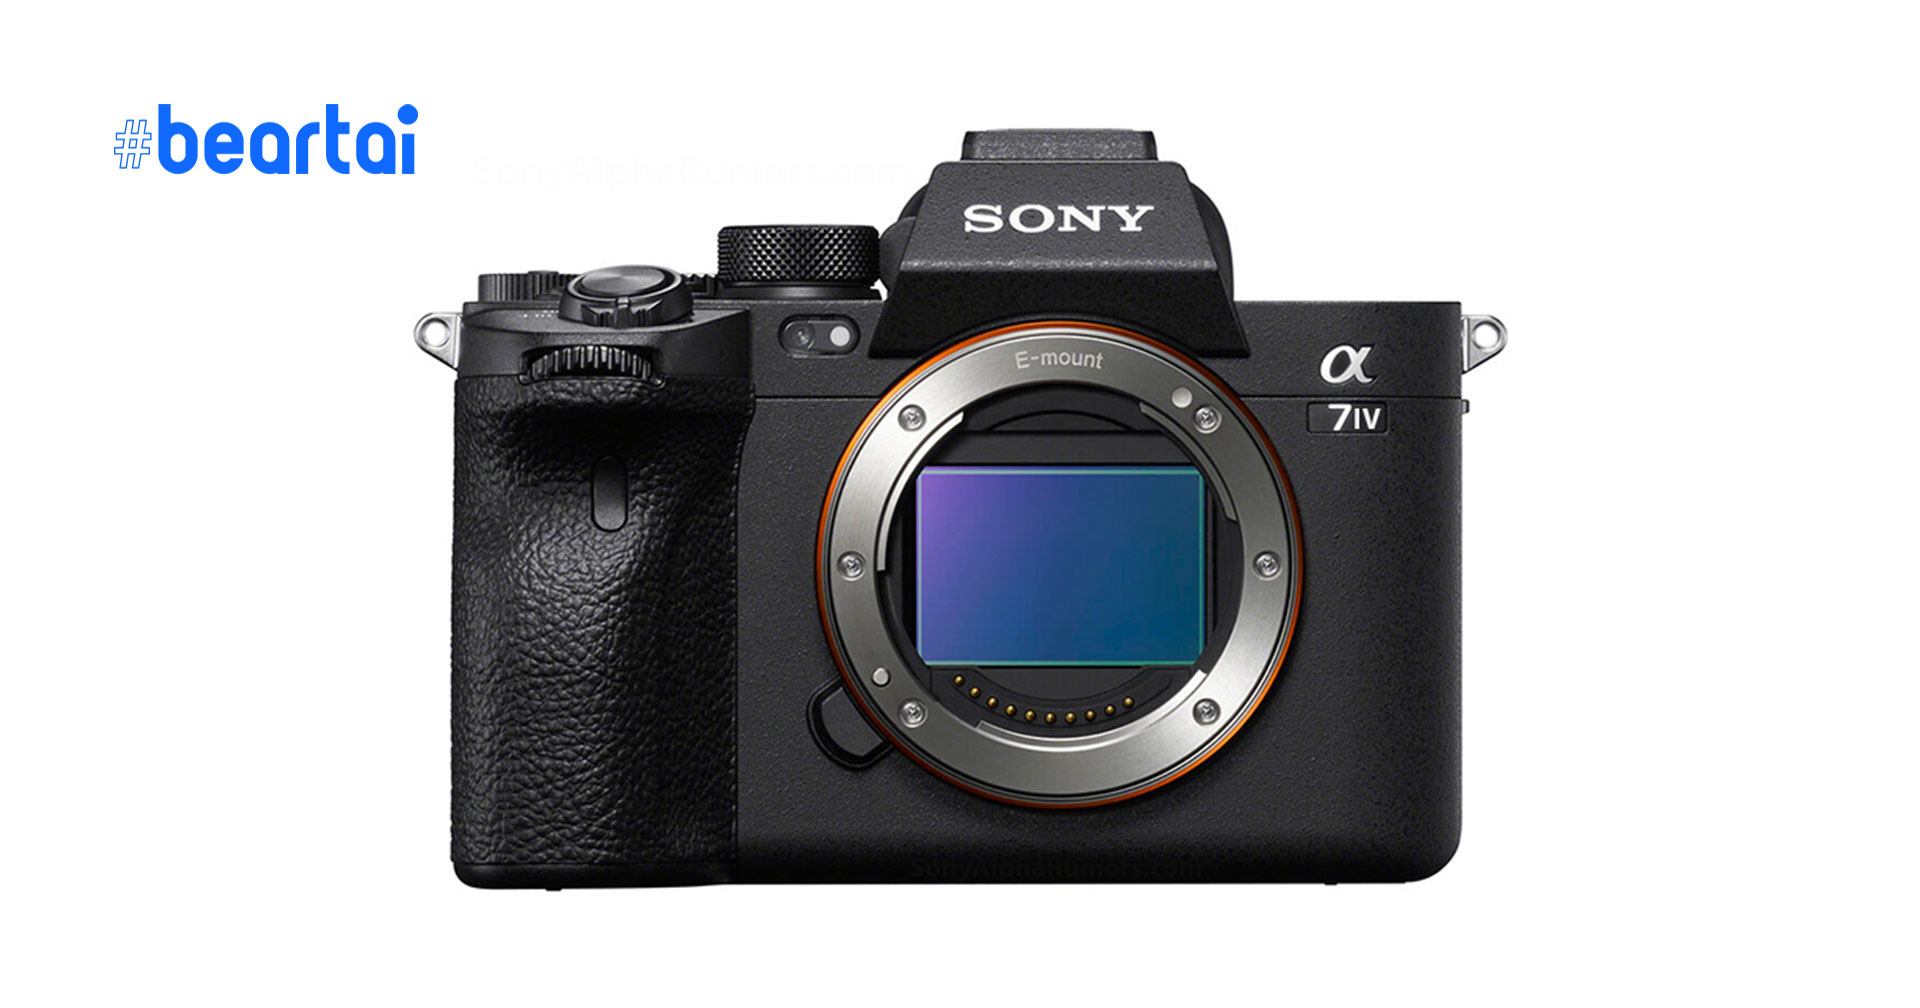 ลือ! กล้อง Sony A7IV จะใช้เซนเซอร์รุ่นใหม่ที่มีละเอียดมากขึ้น วิดีโอ 4K 60p